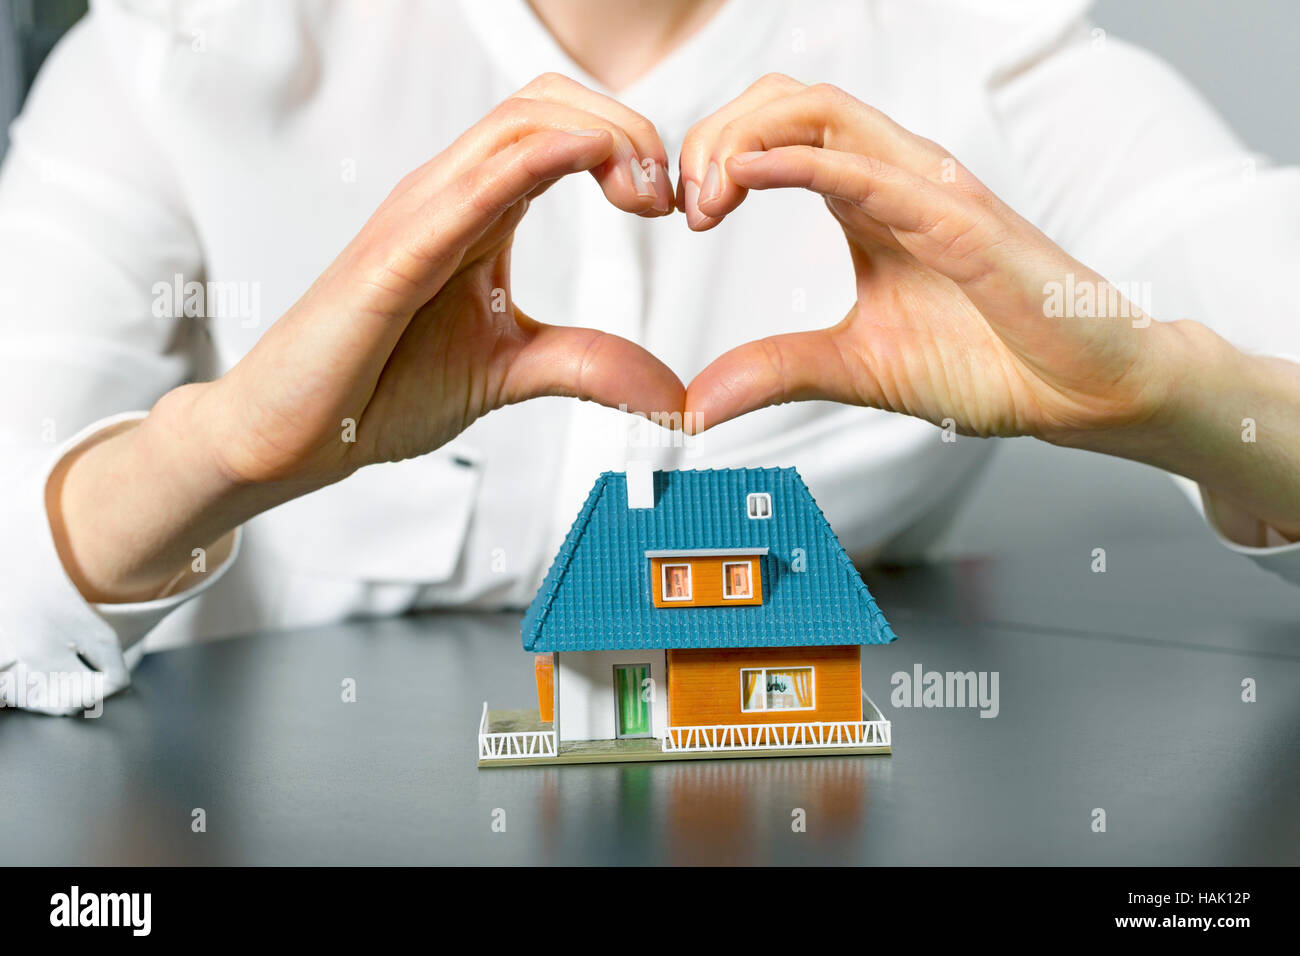 La charité, l'immobilier et de la famille accueil concept - la main de l'homme en forme de coeur au-dessus de petite maison en plastique Banque D'Images